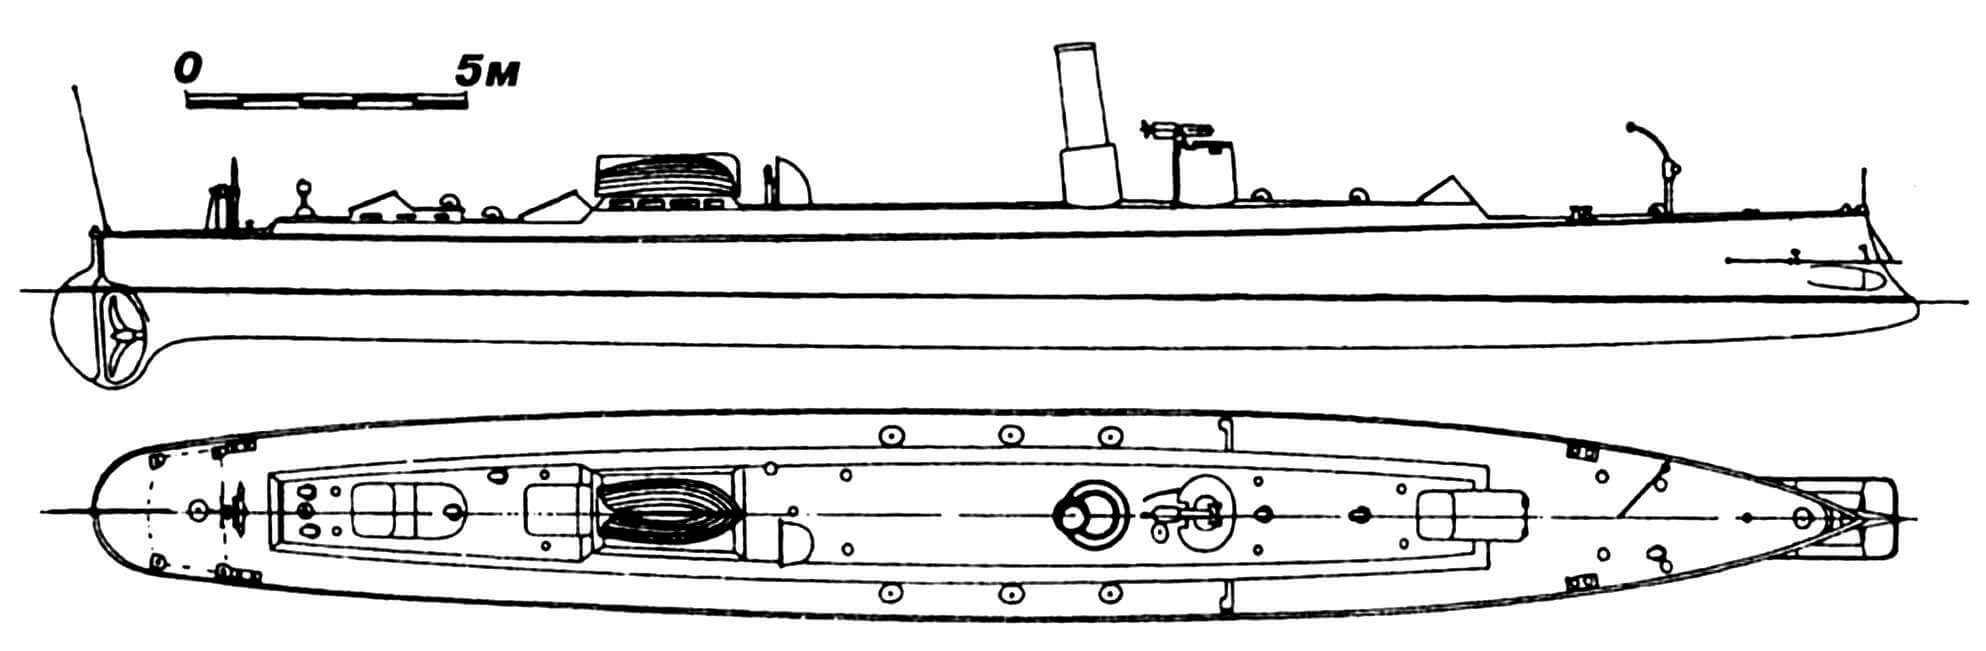 39. Миноносец «Свардфискен», Дания, 1881 г. Строился в Англии фирмой «Торникрофт». Водоизмещение нормальное 49 т. Длина наибольшая 33,52 м, ширина 3,66 м, осадка 1,83 м. Мощность одновальной паросиловой установки 695 л.с., скорость 18 узлов (на испытаниях — 20,75 узла). Вооружение: два торпедных аппарата и 25-мм револьверная пушка.